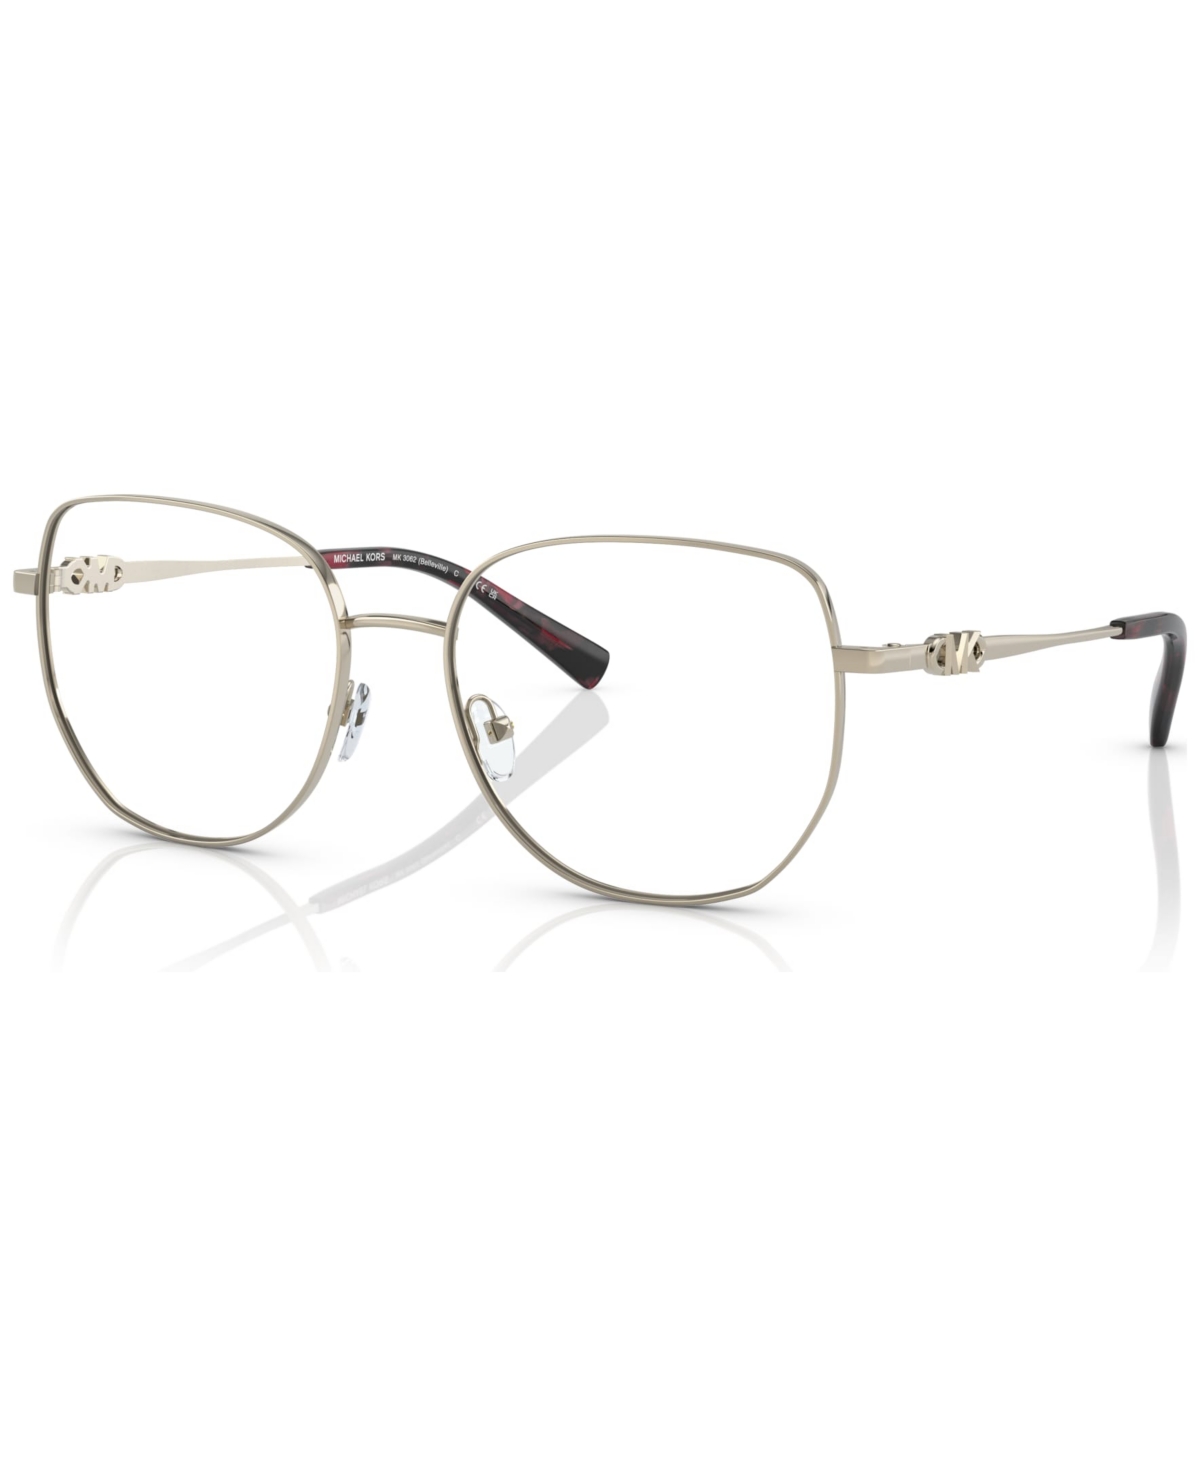 Women's Belleville Eyeglasses, MK3062 - Light Gold